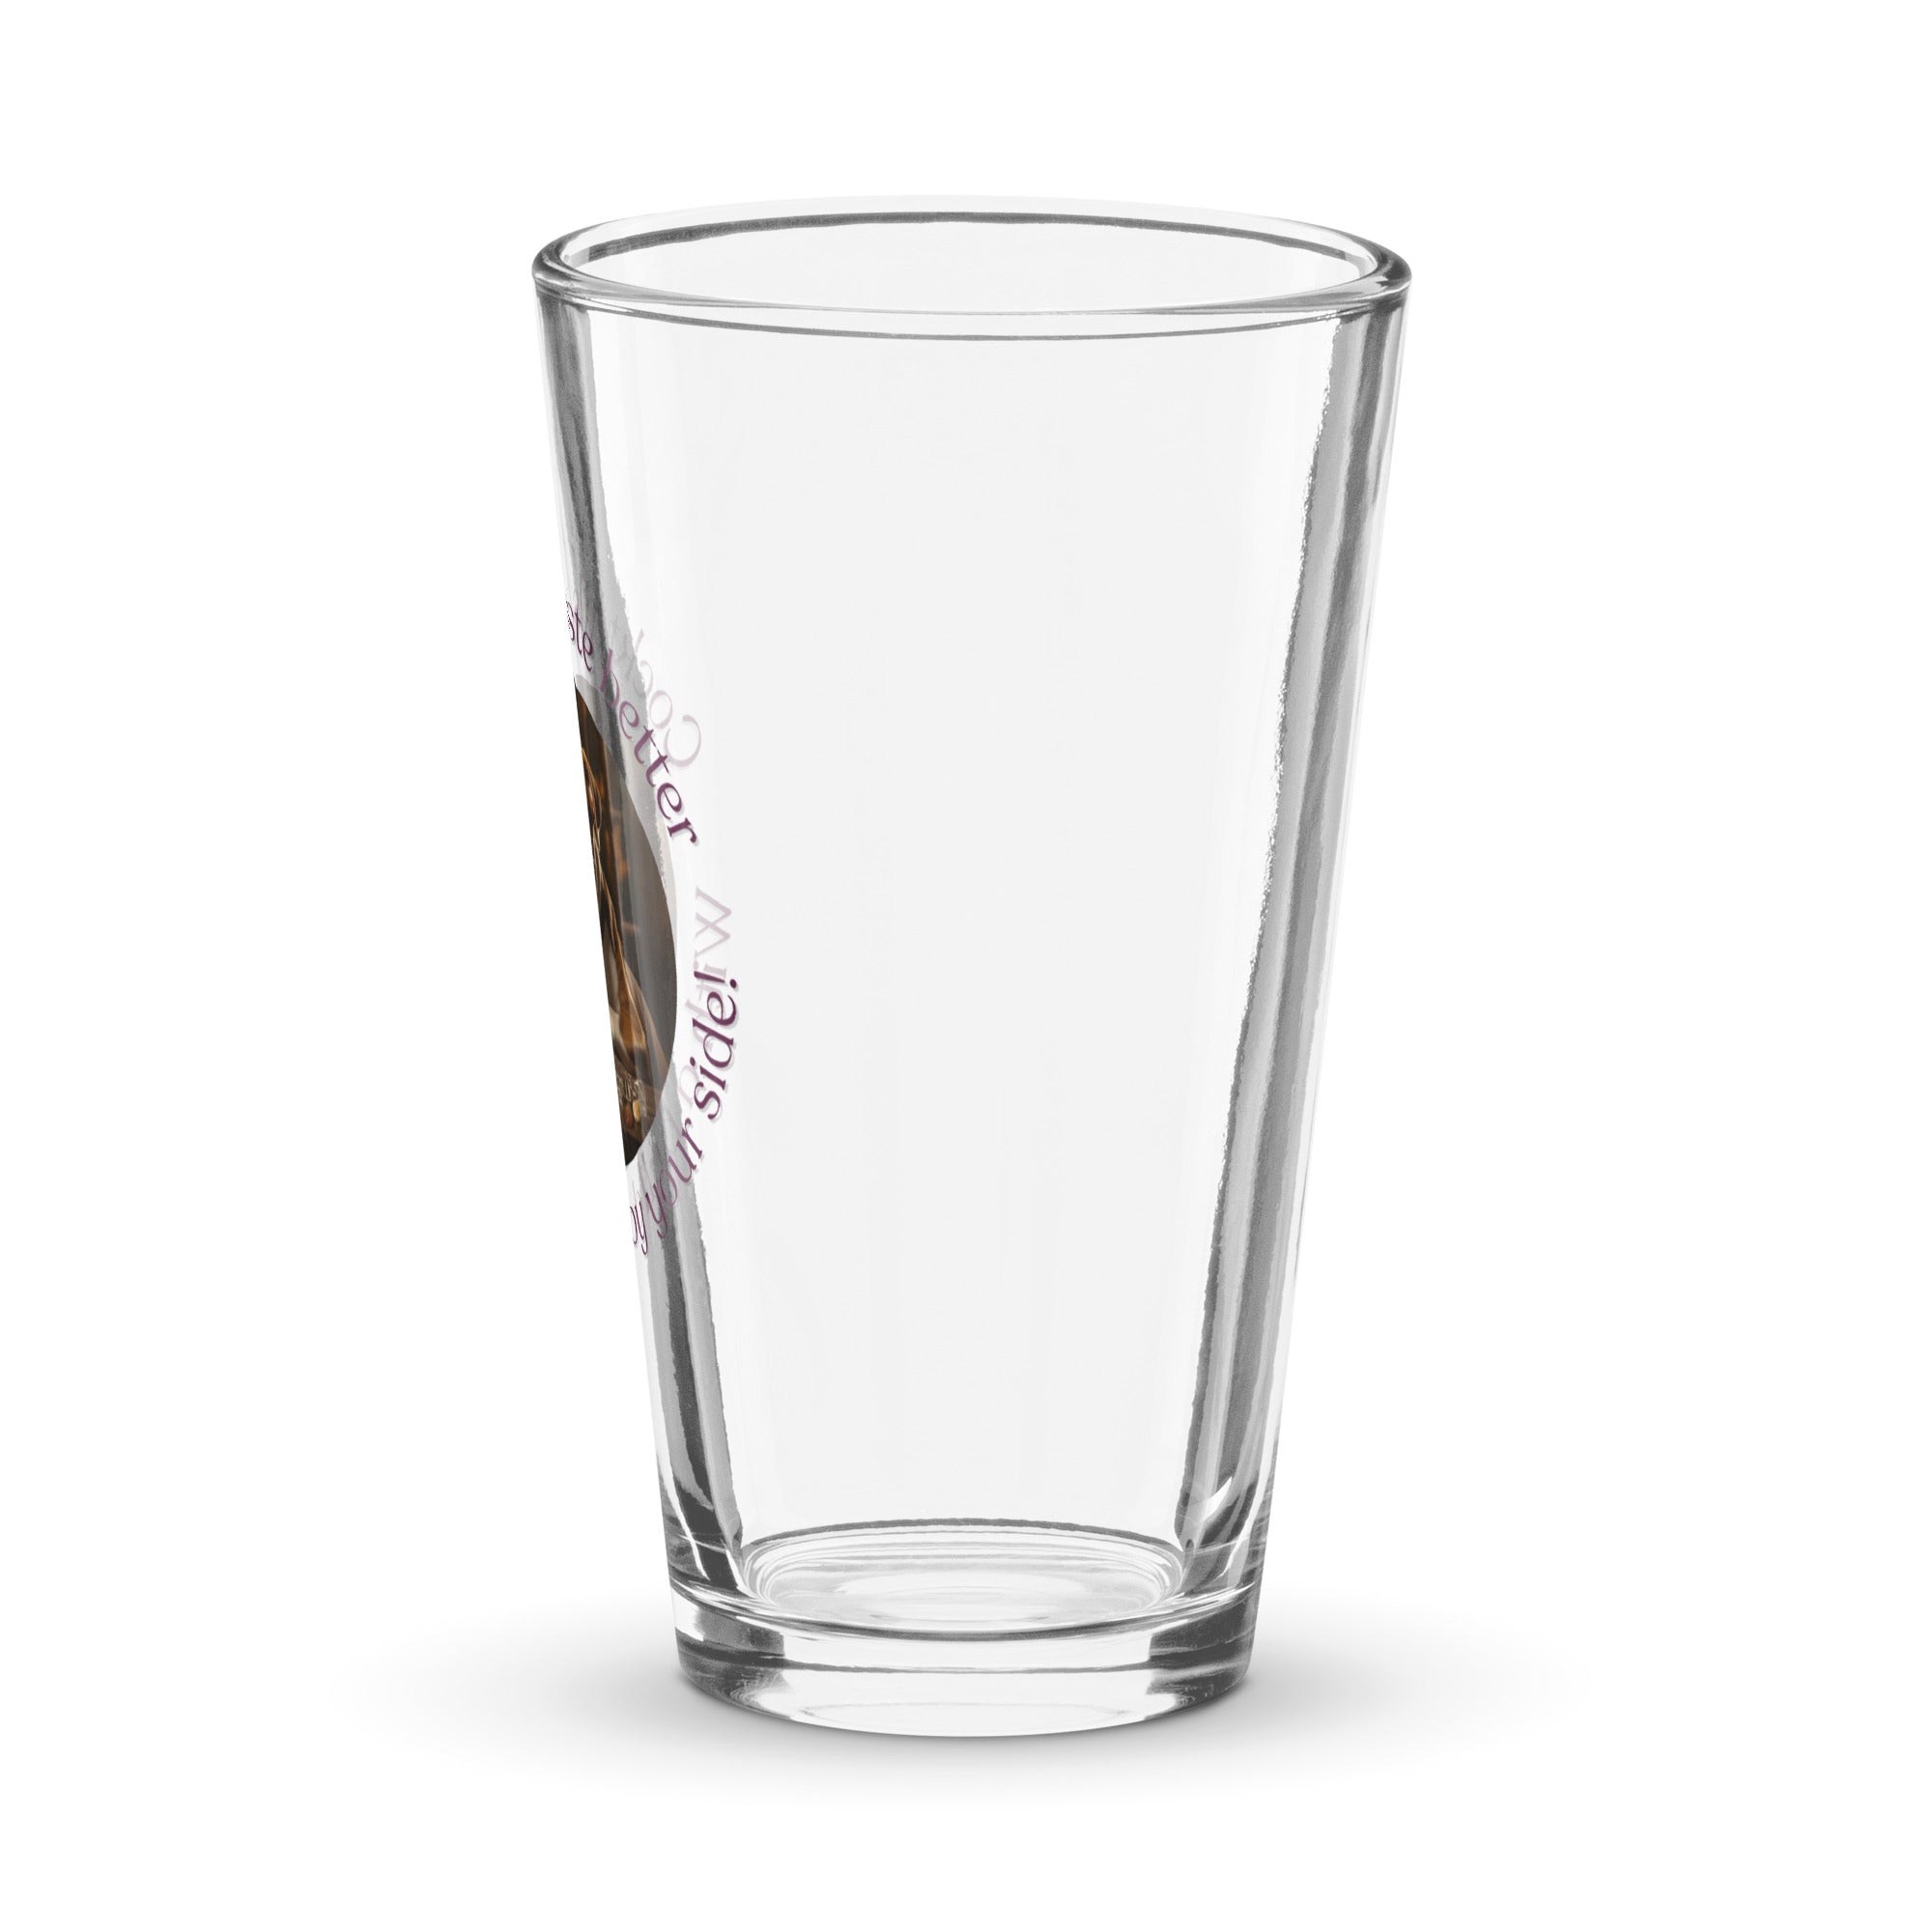 Shaker pint glass - Cocktails Taste Better - American Bulldog